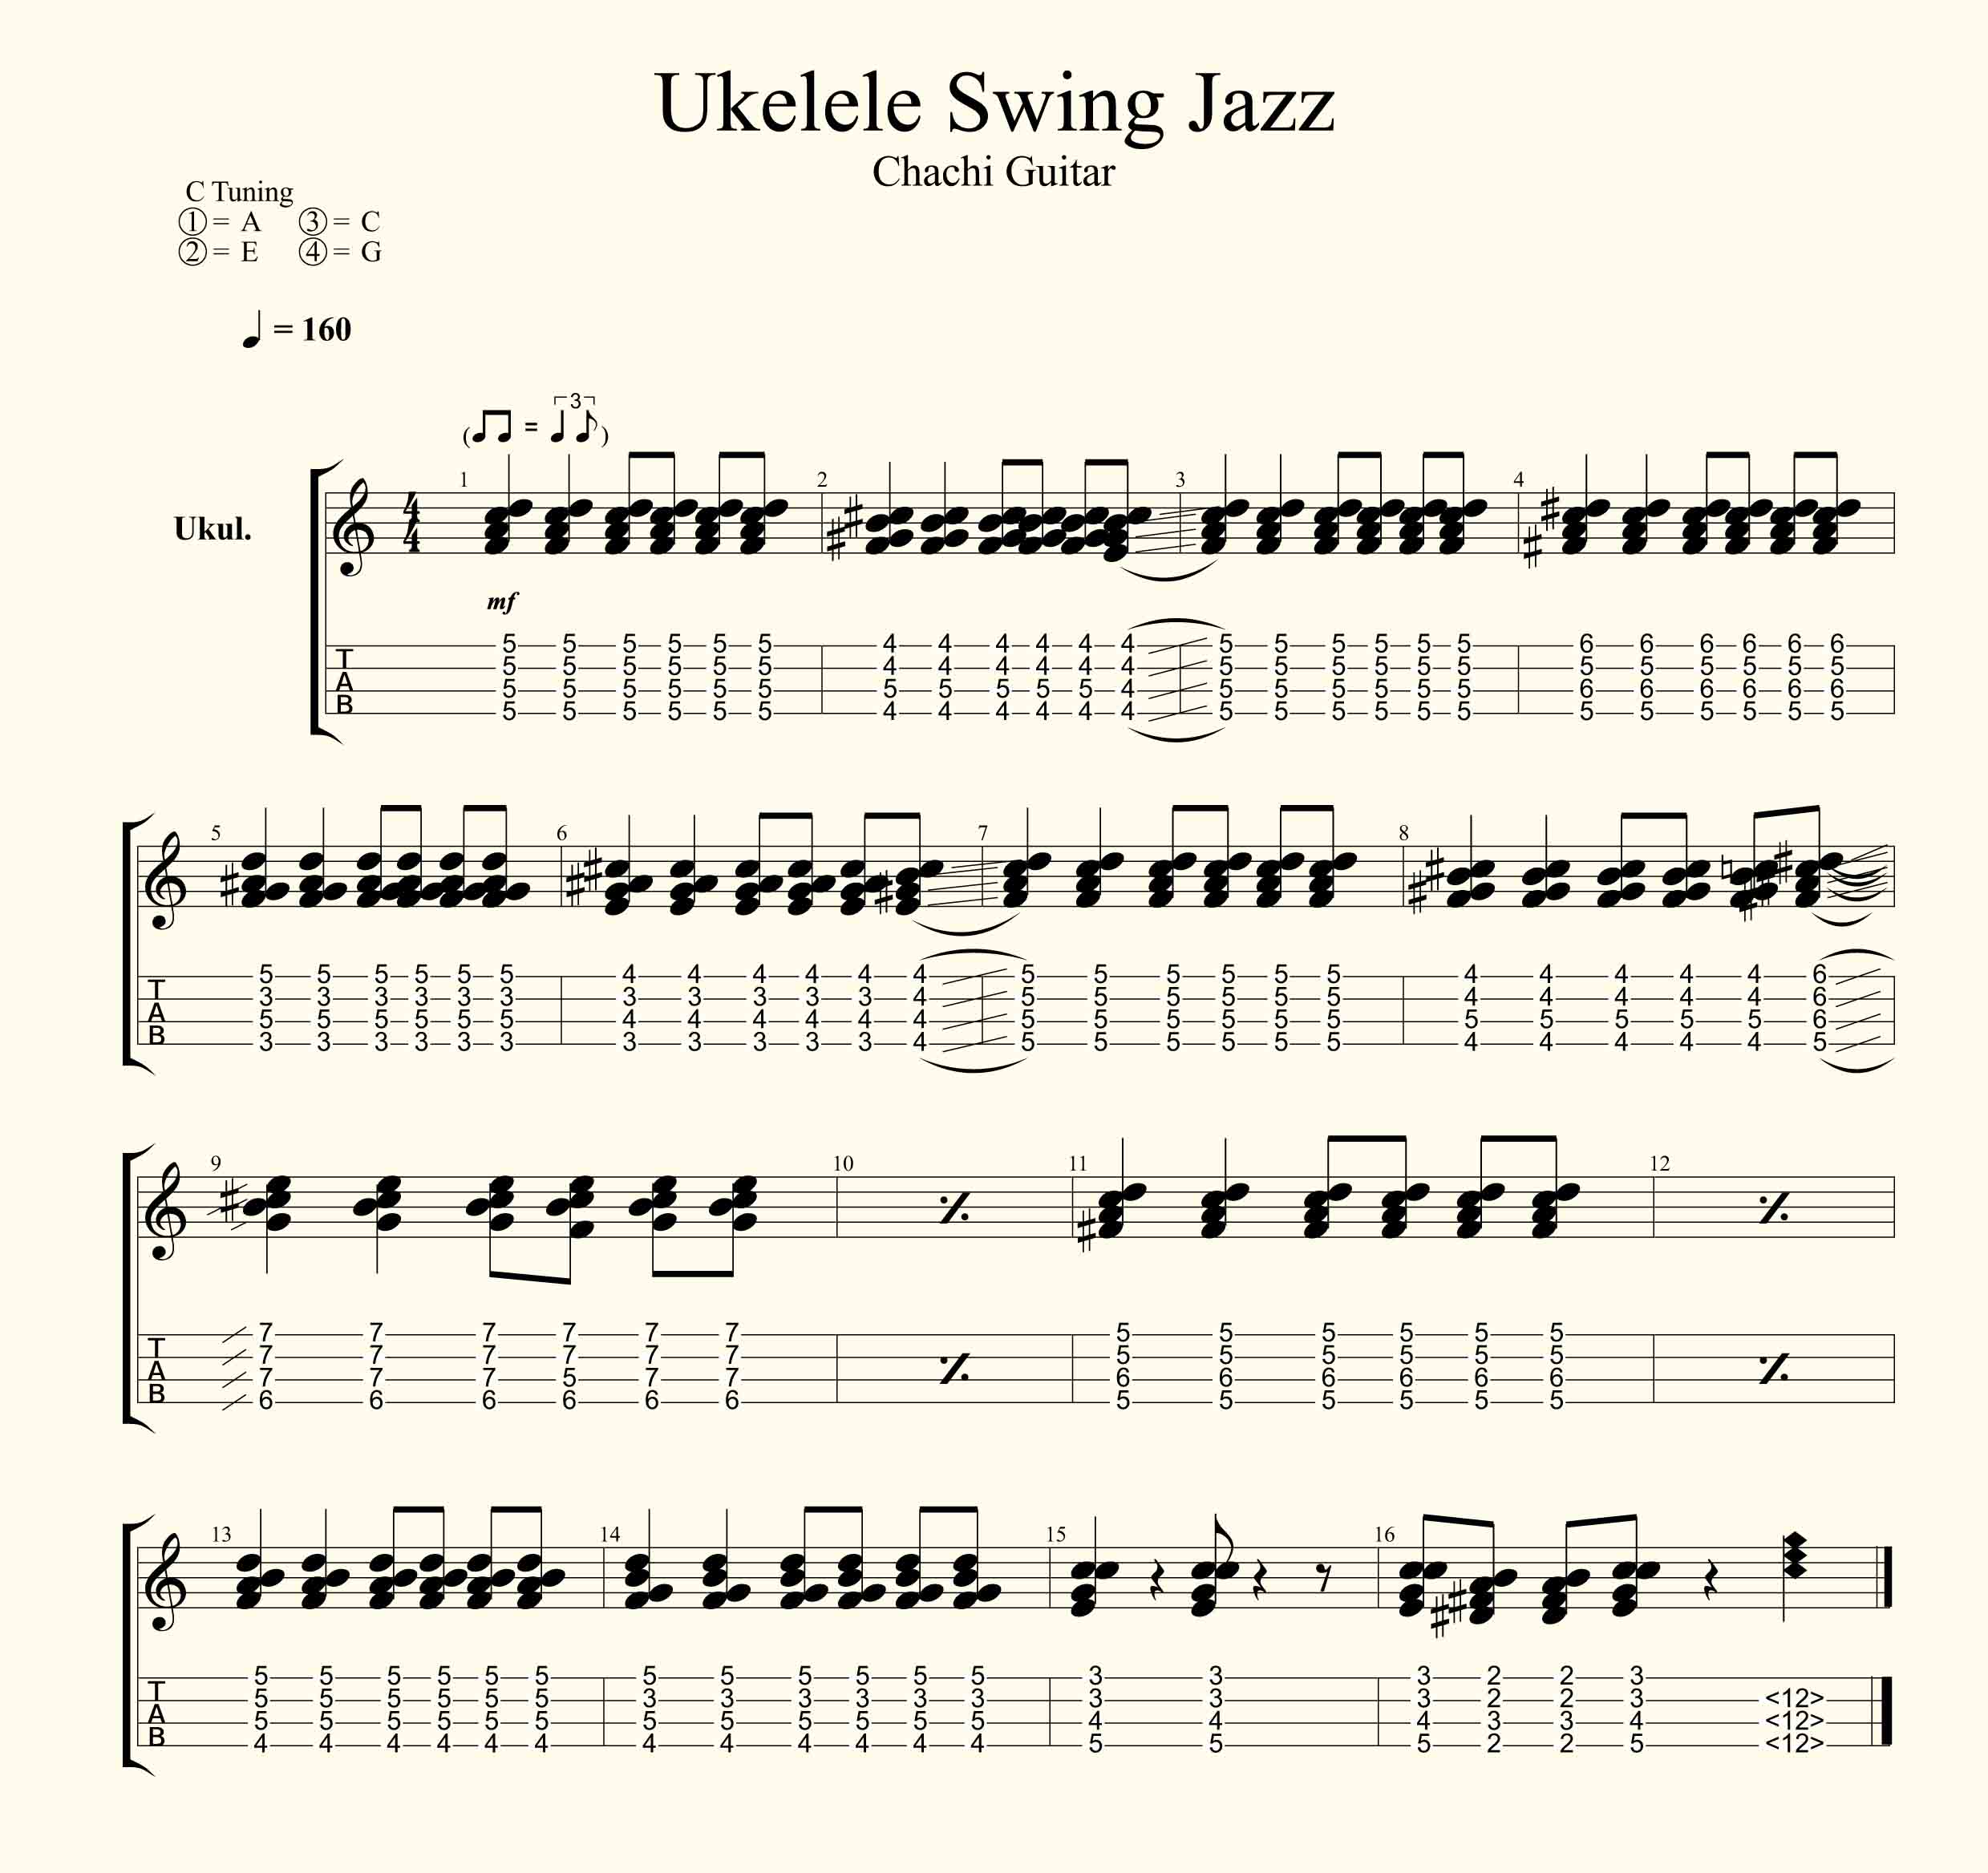 Ukelele Swing Jazz Acordes Faciles Como Tocar Jazz Chachi Guitar Vaca lola la cucaracha elefante se balanceaba 10 perritos estaba la rana. ukelele swing jazz acordes faciles